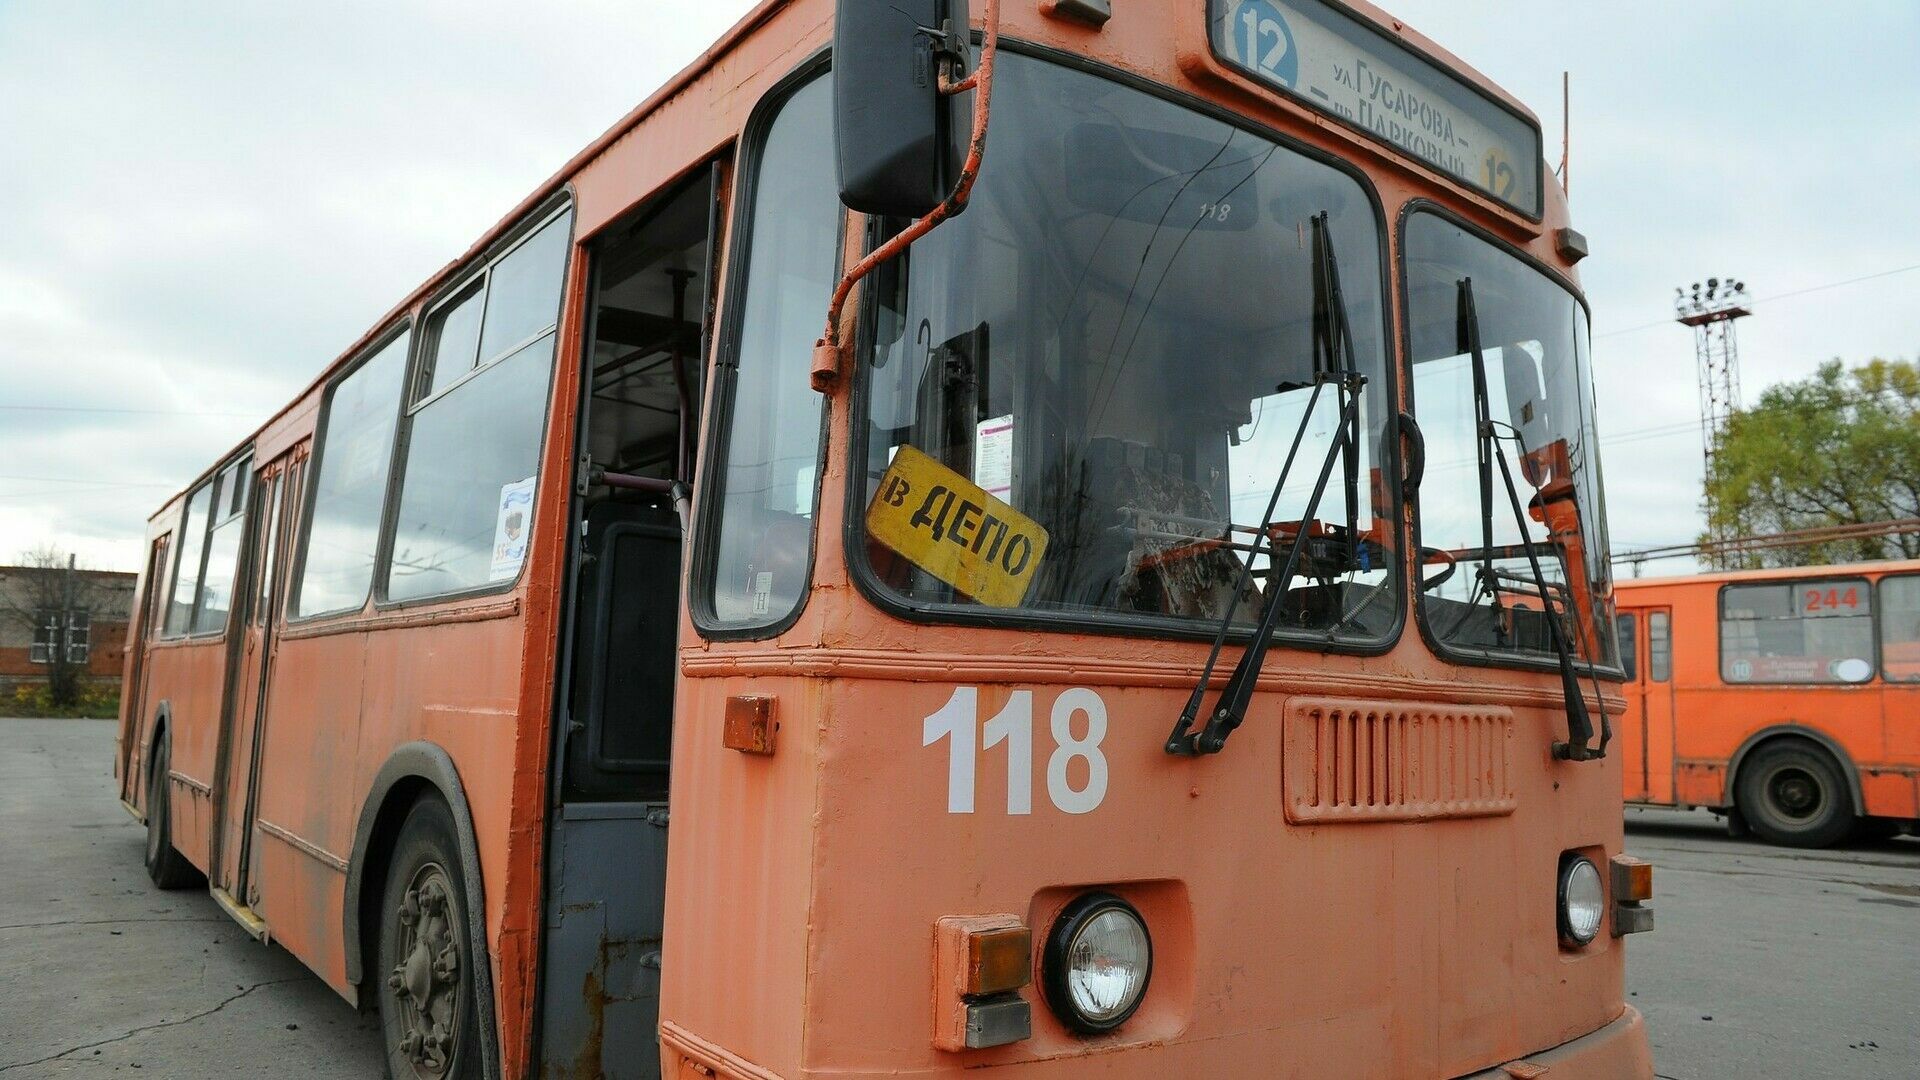 Пермяки проведут митинг против новой маршрутной сети и ликвидации троллейбусов